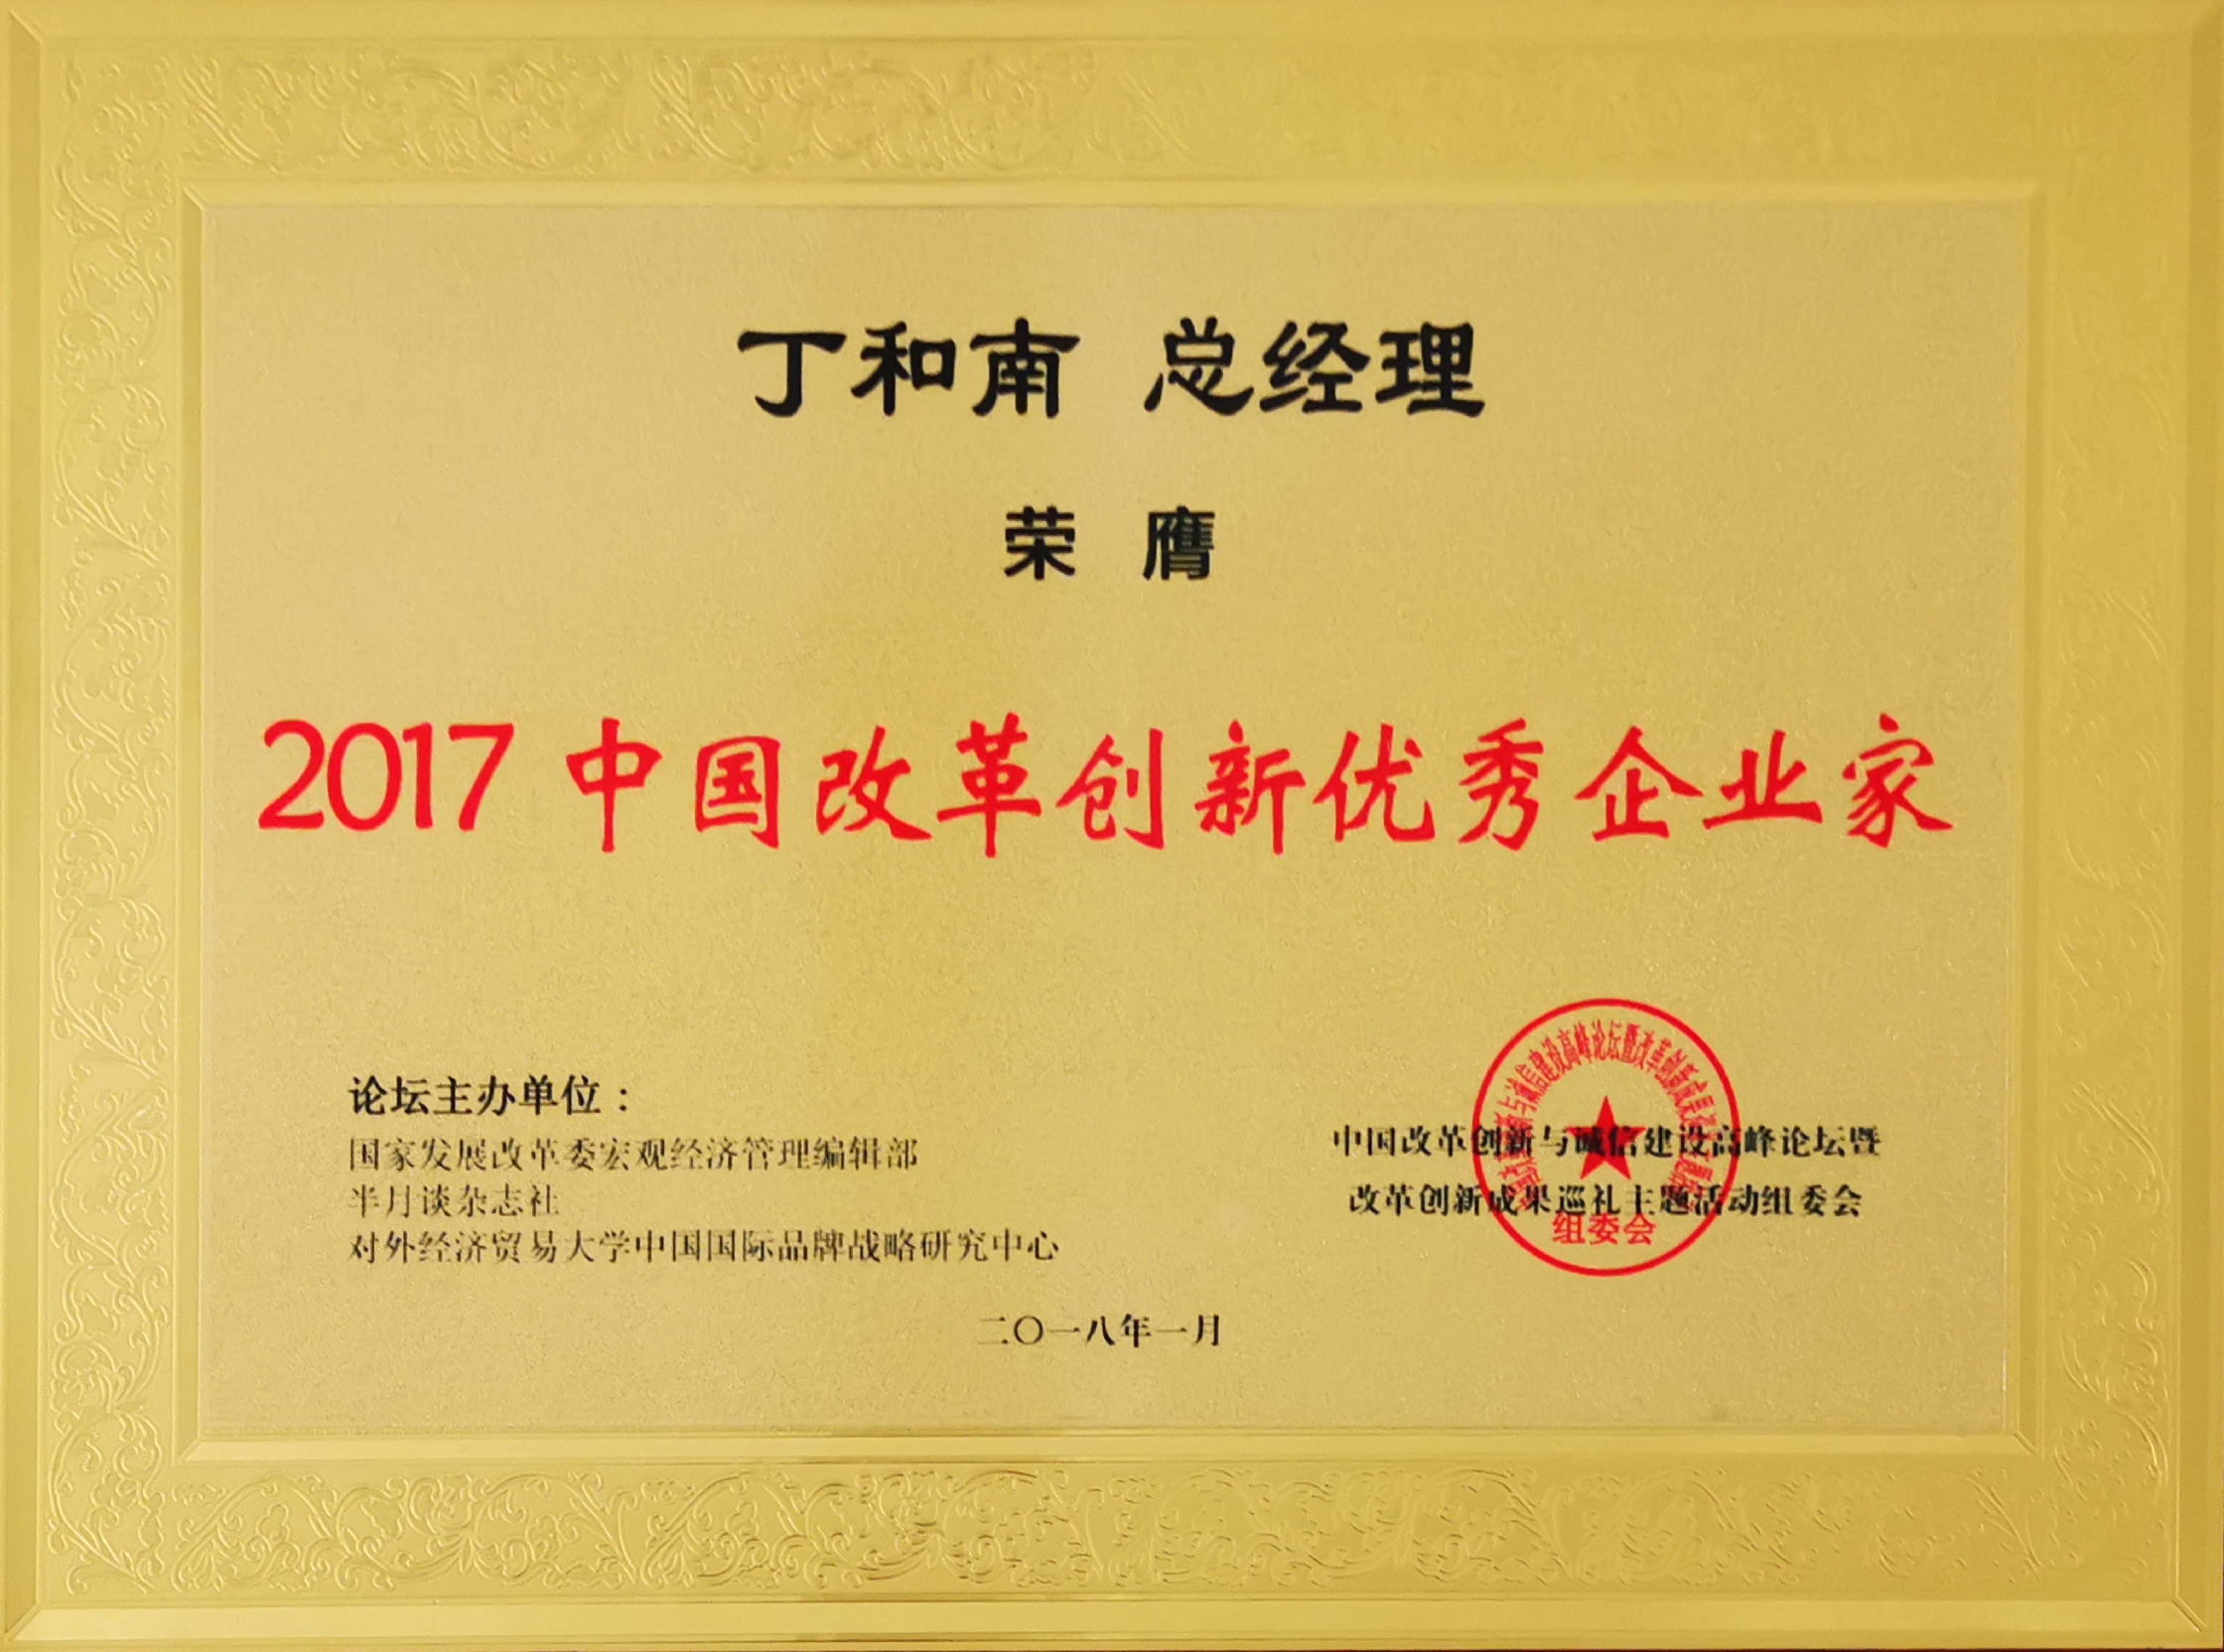 2017年总经理丁和南先生被评为“2017中国改革创新优秀企业家”